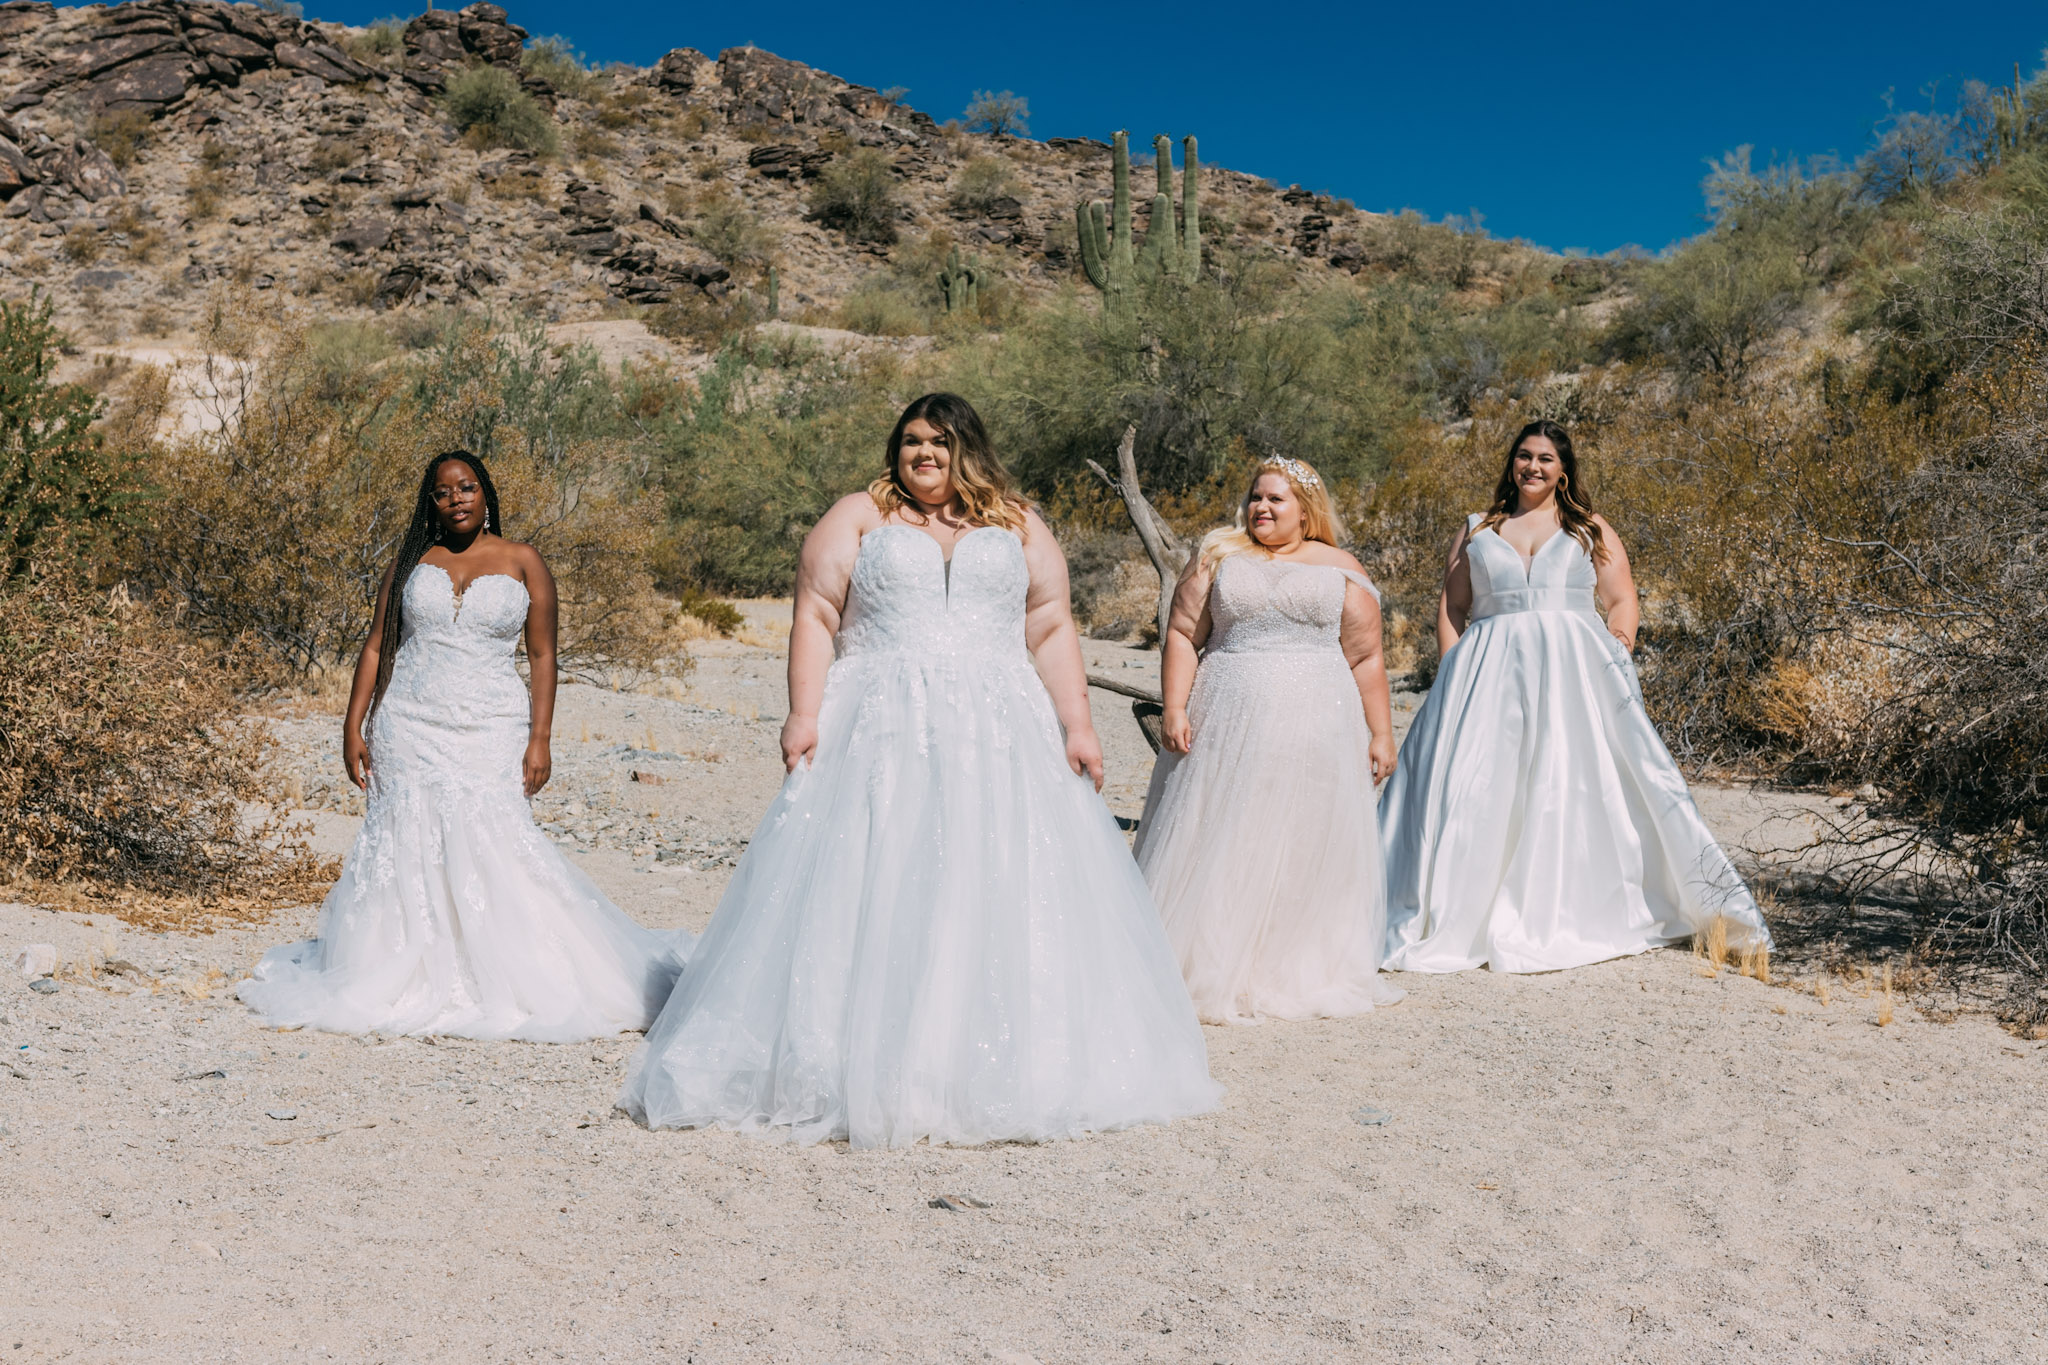 4 brides on beach